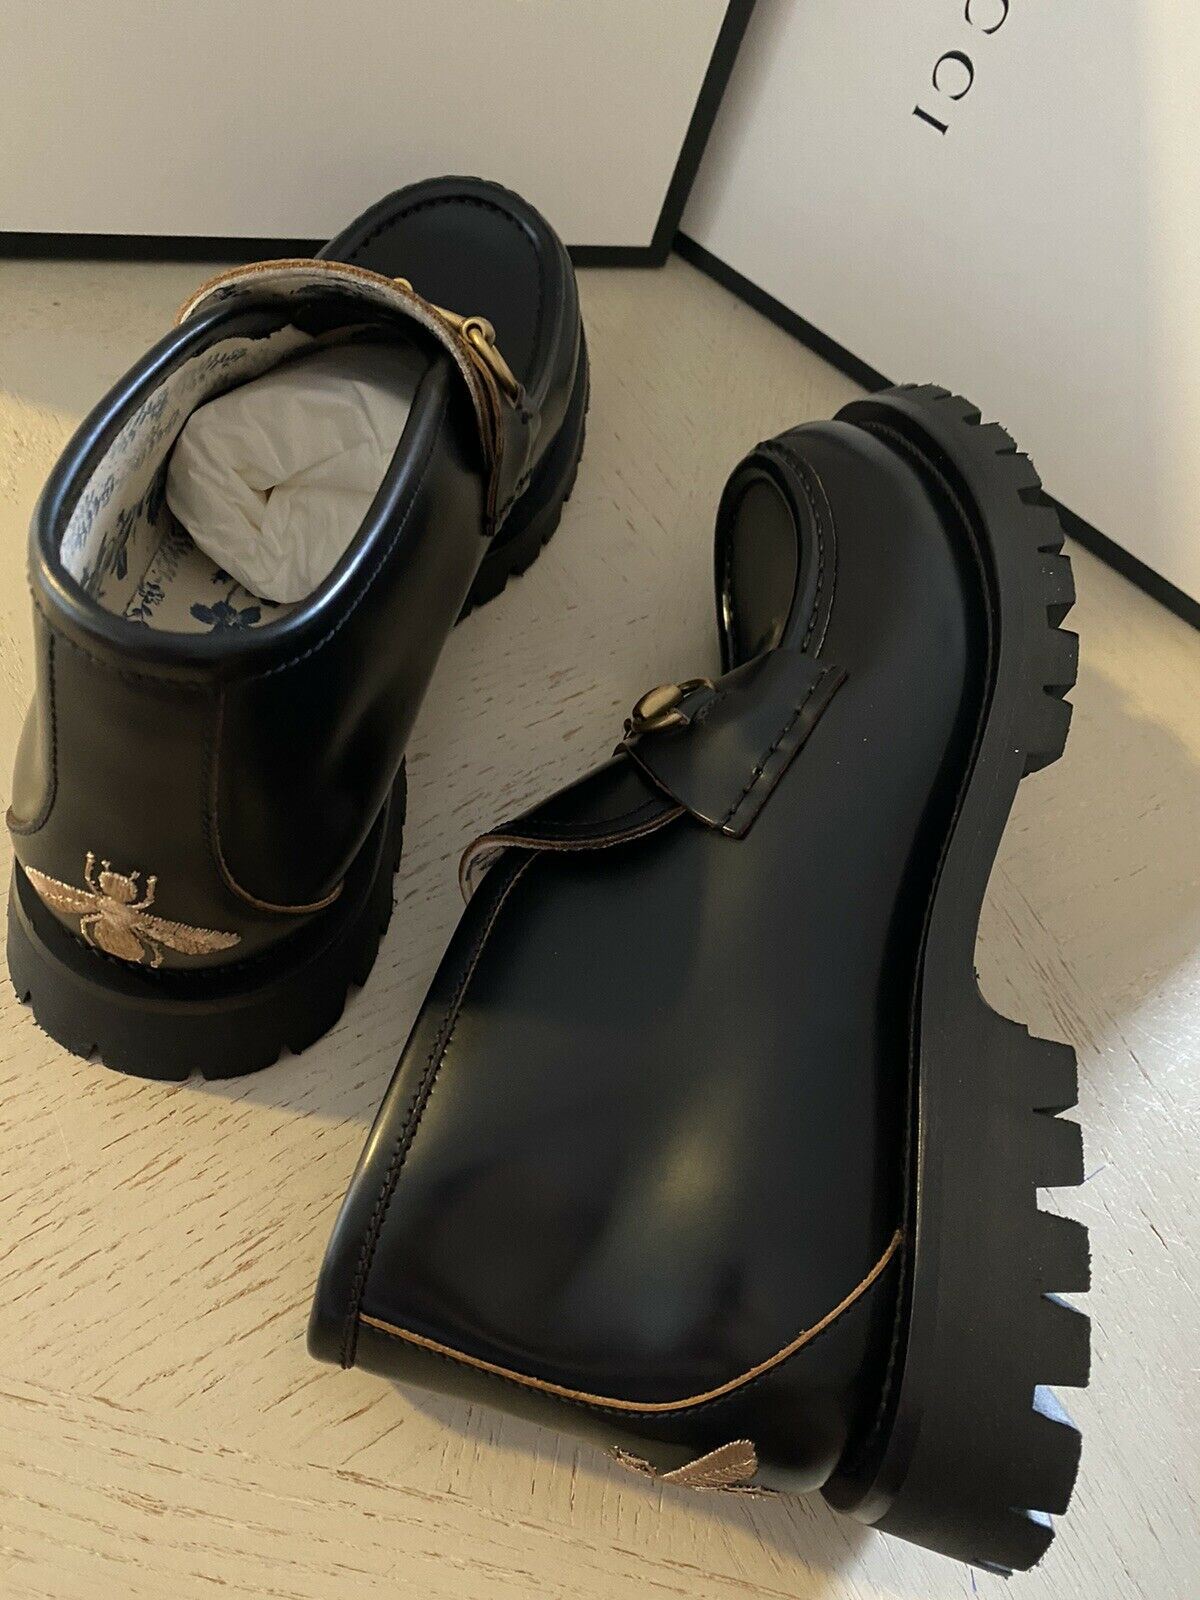 NIB $ 1750 Gucci Herren Cordovan Lux Leder Stiefeletten Schuhe Schwarz 10 US / 9 UK